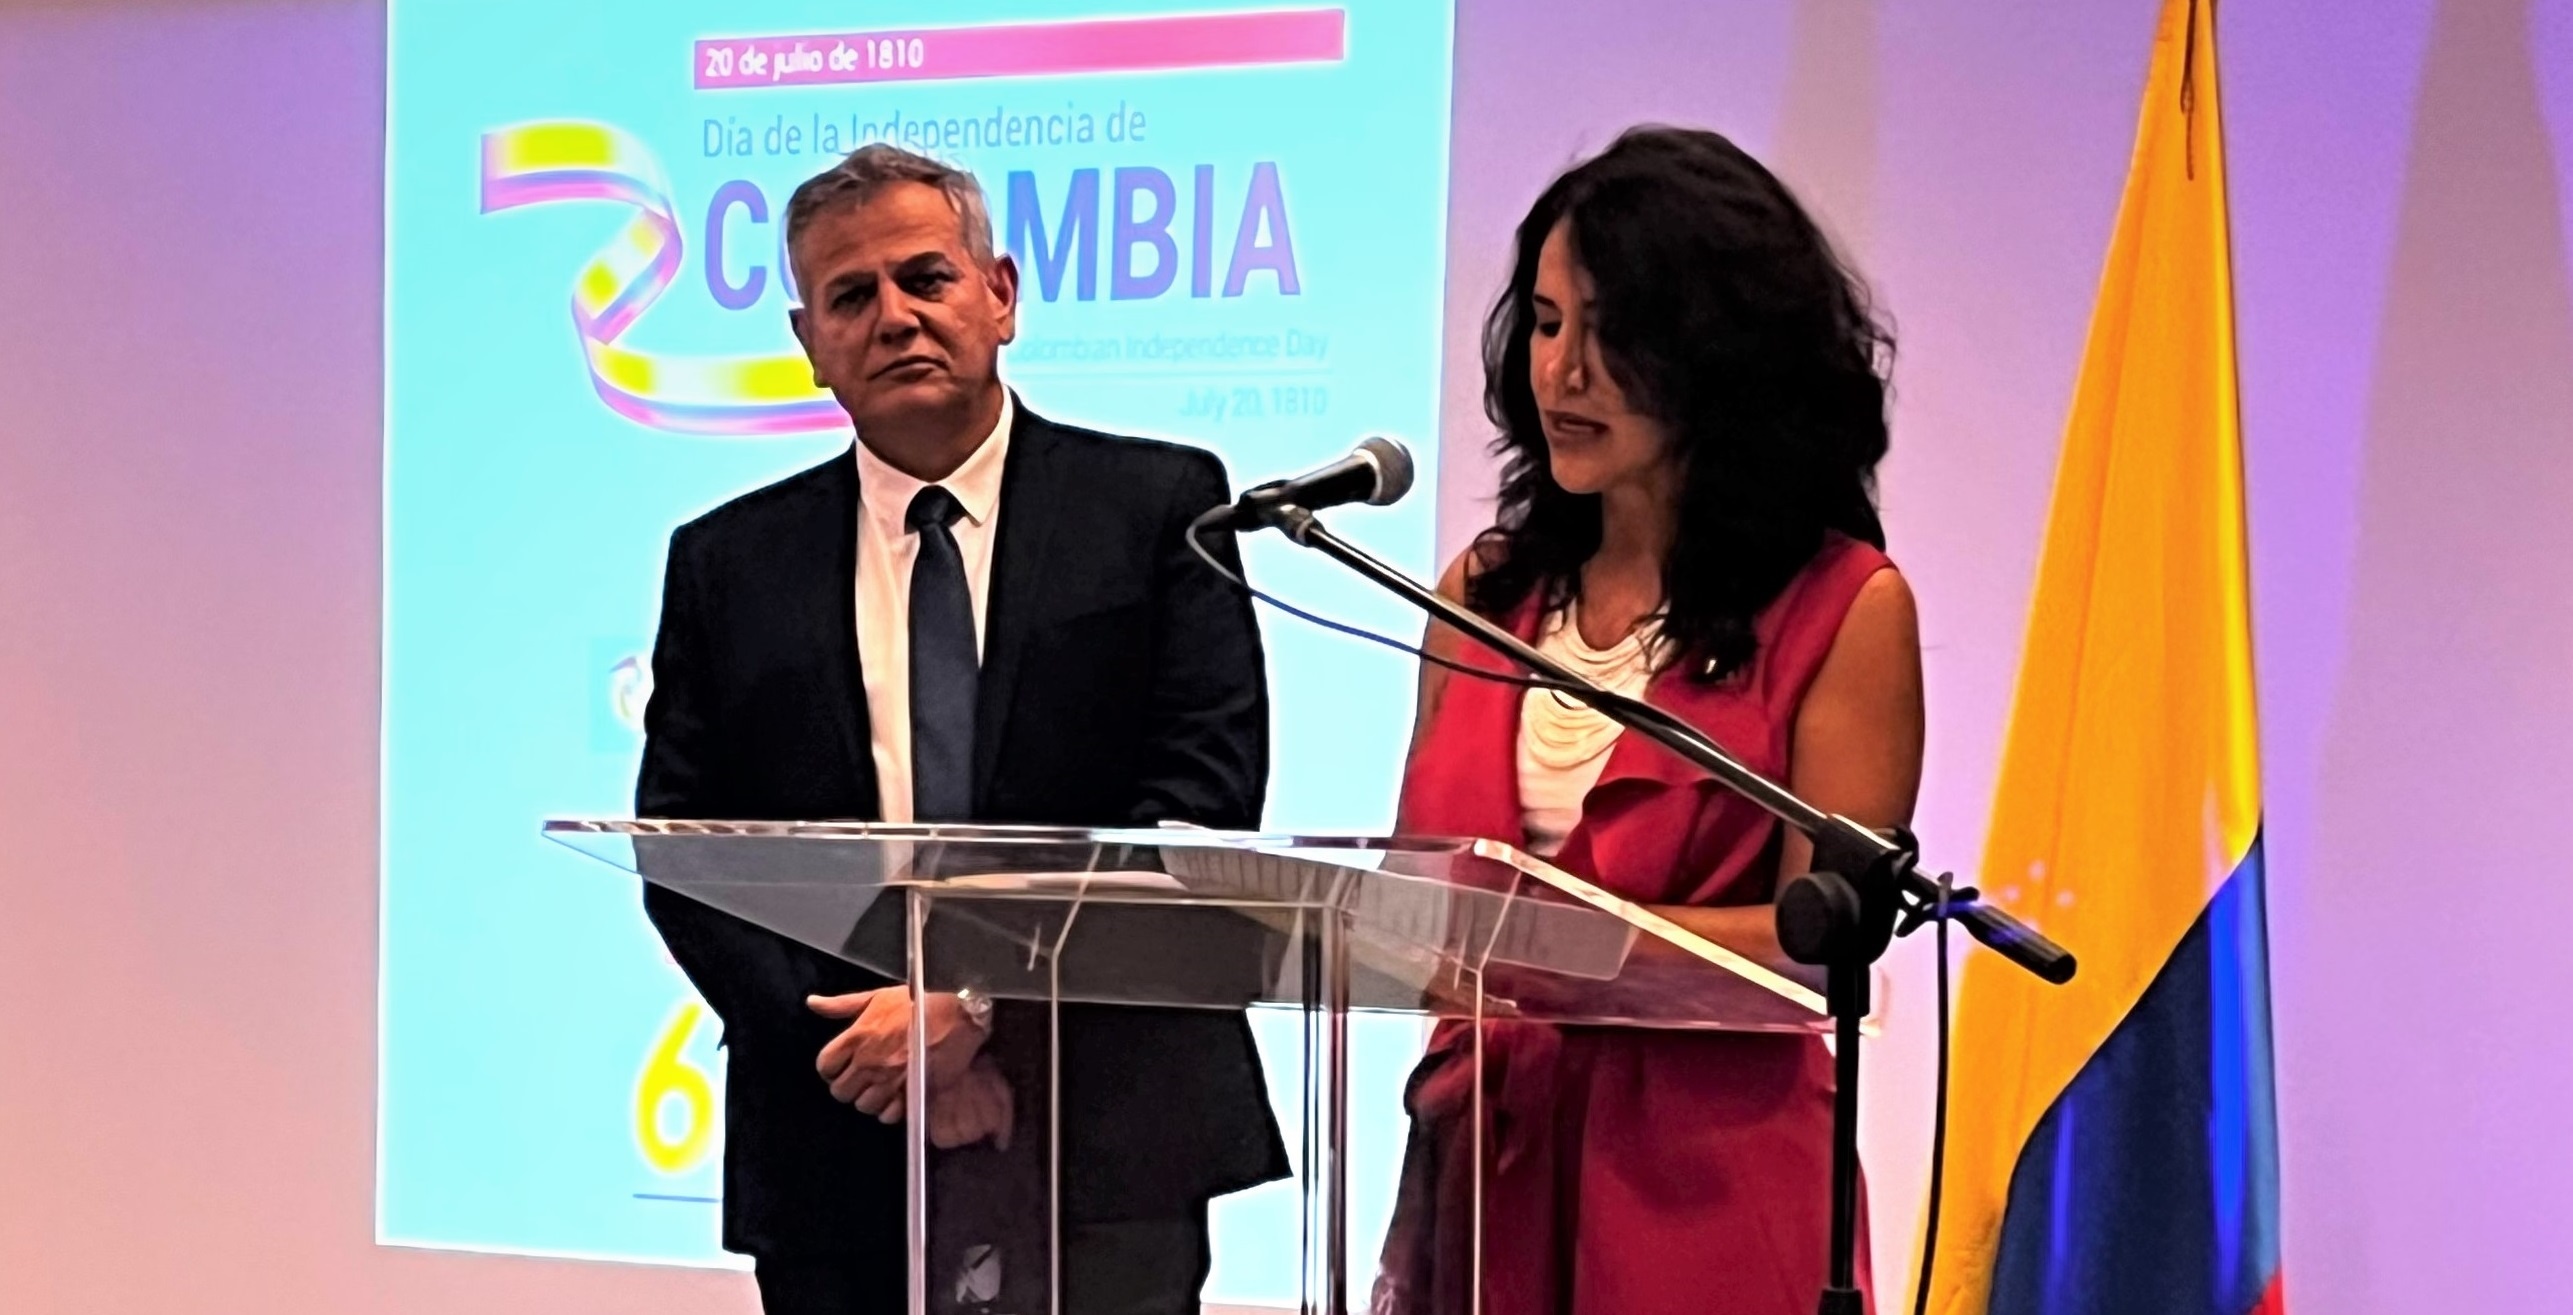 Conmemoración en Israel de los 212 años de la Independencia de Colombia y de los 65 años de relaciones diplomáticas Colombia-Israel 